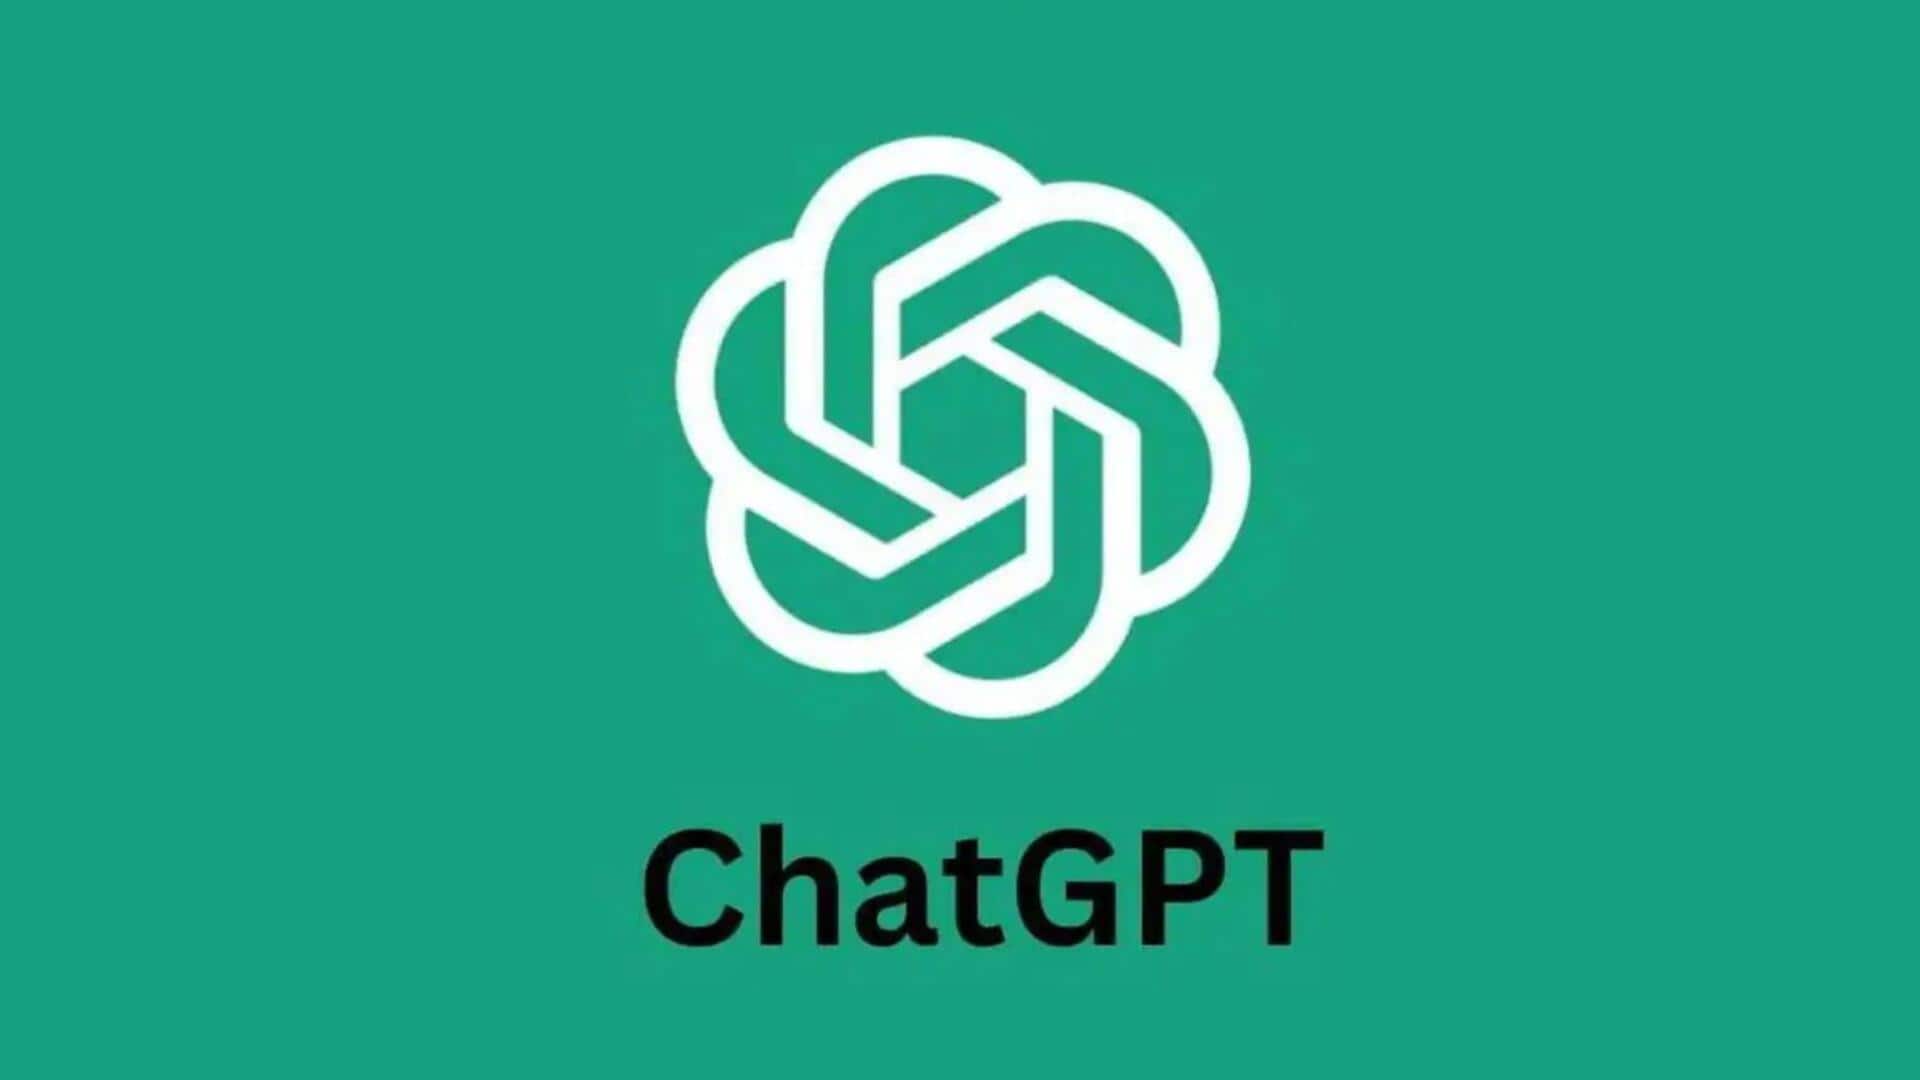 OpenAI ने ChatGPT में जोड़ा रीड अलाउड फीचर, जानें कैसे करता है काम